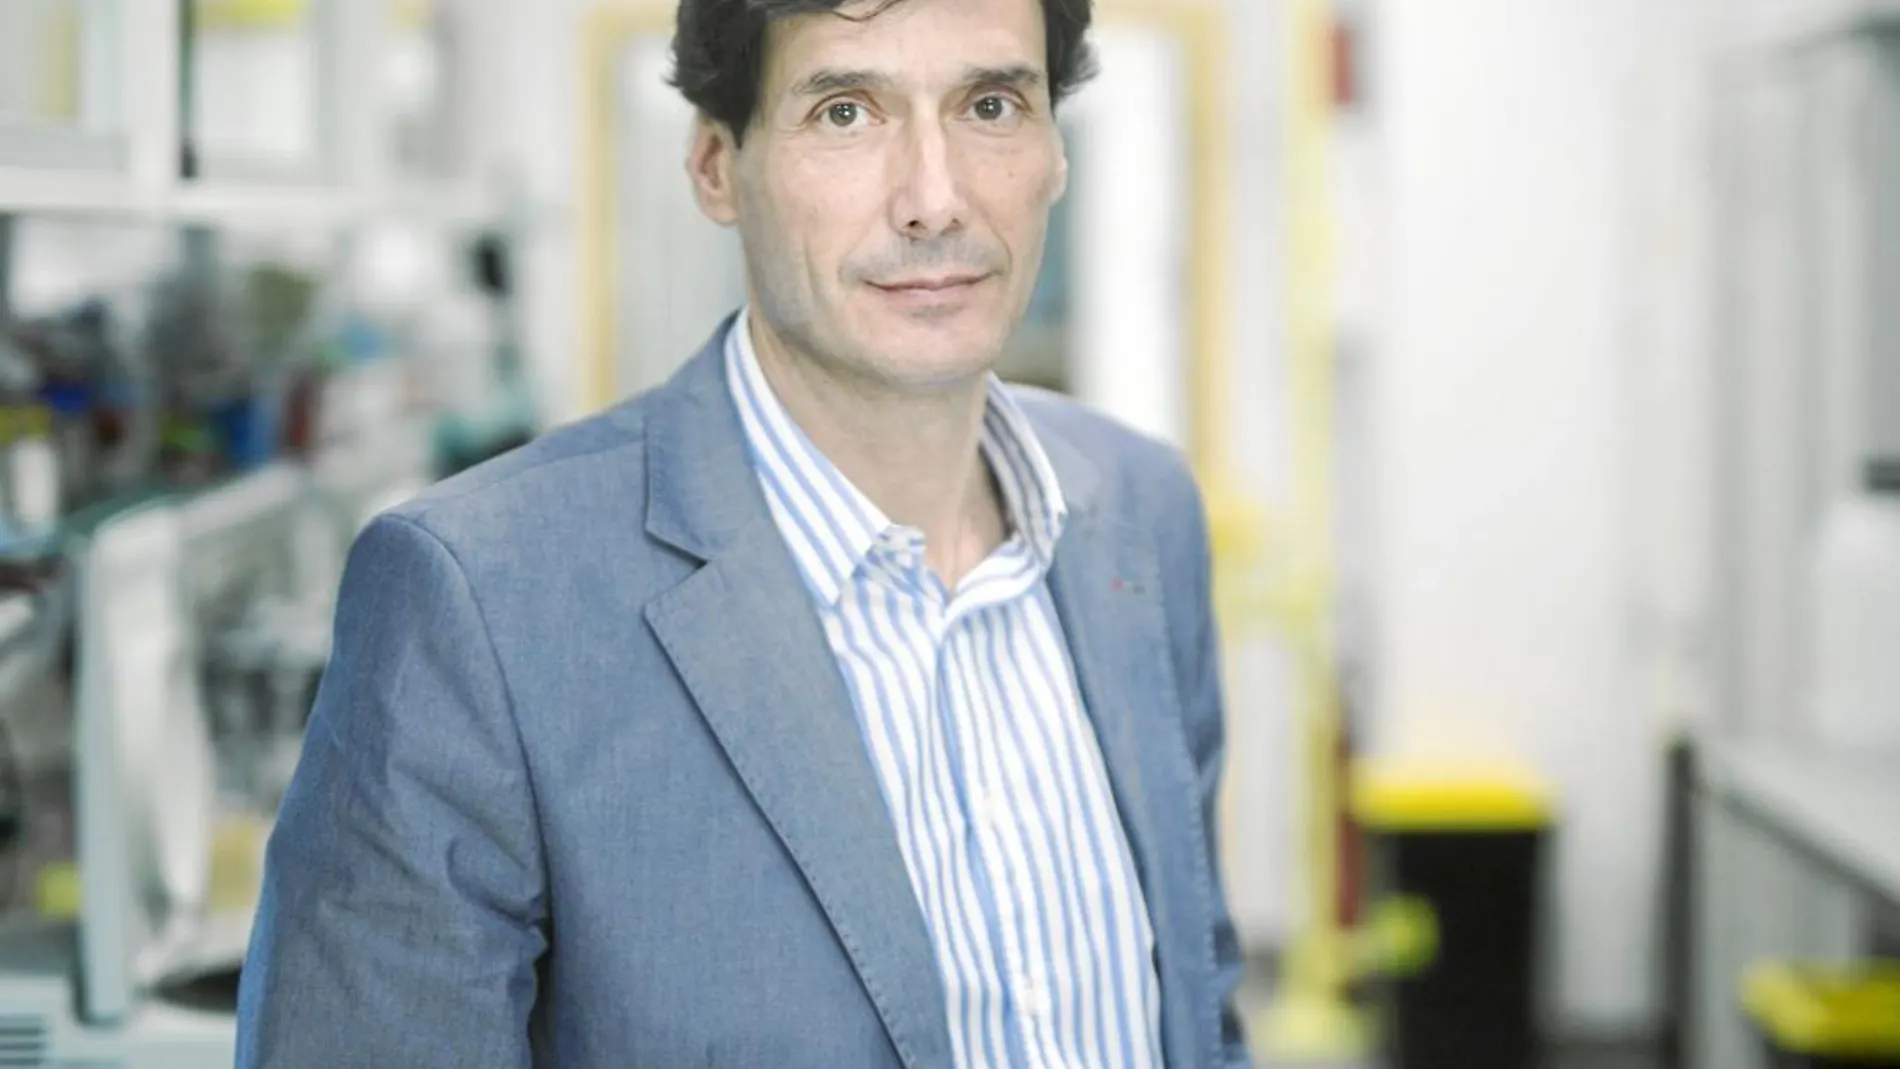 Manuel Serrano, investigador del Instituto de investigación Biomédica de Barcelona, tambien ha entrado a formar parte de Alto Labs.